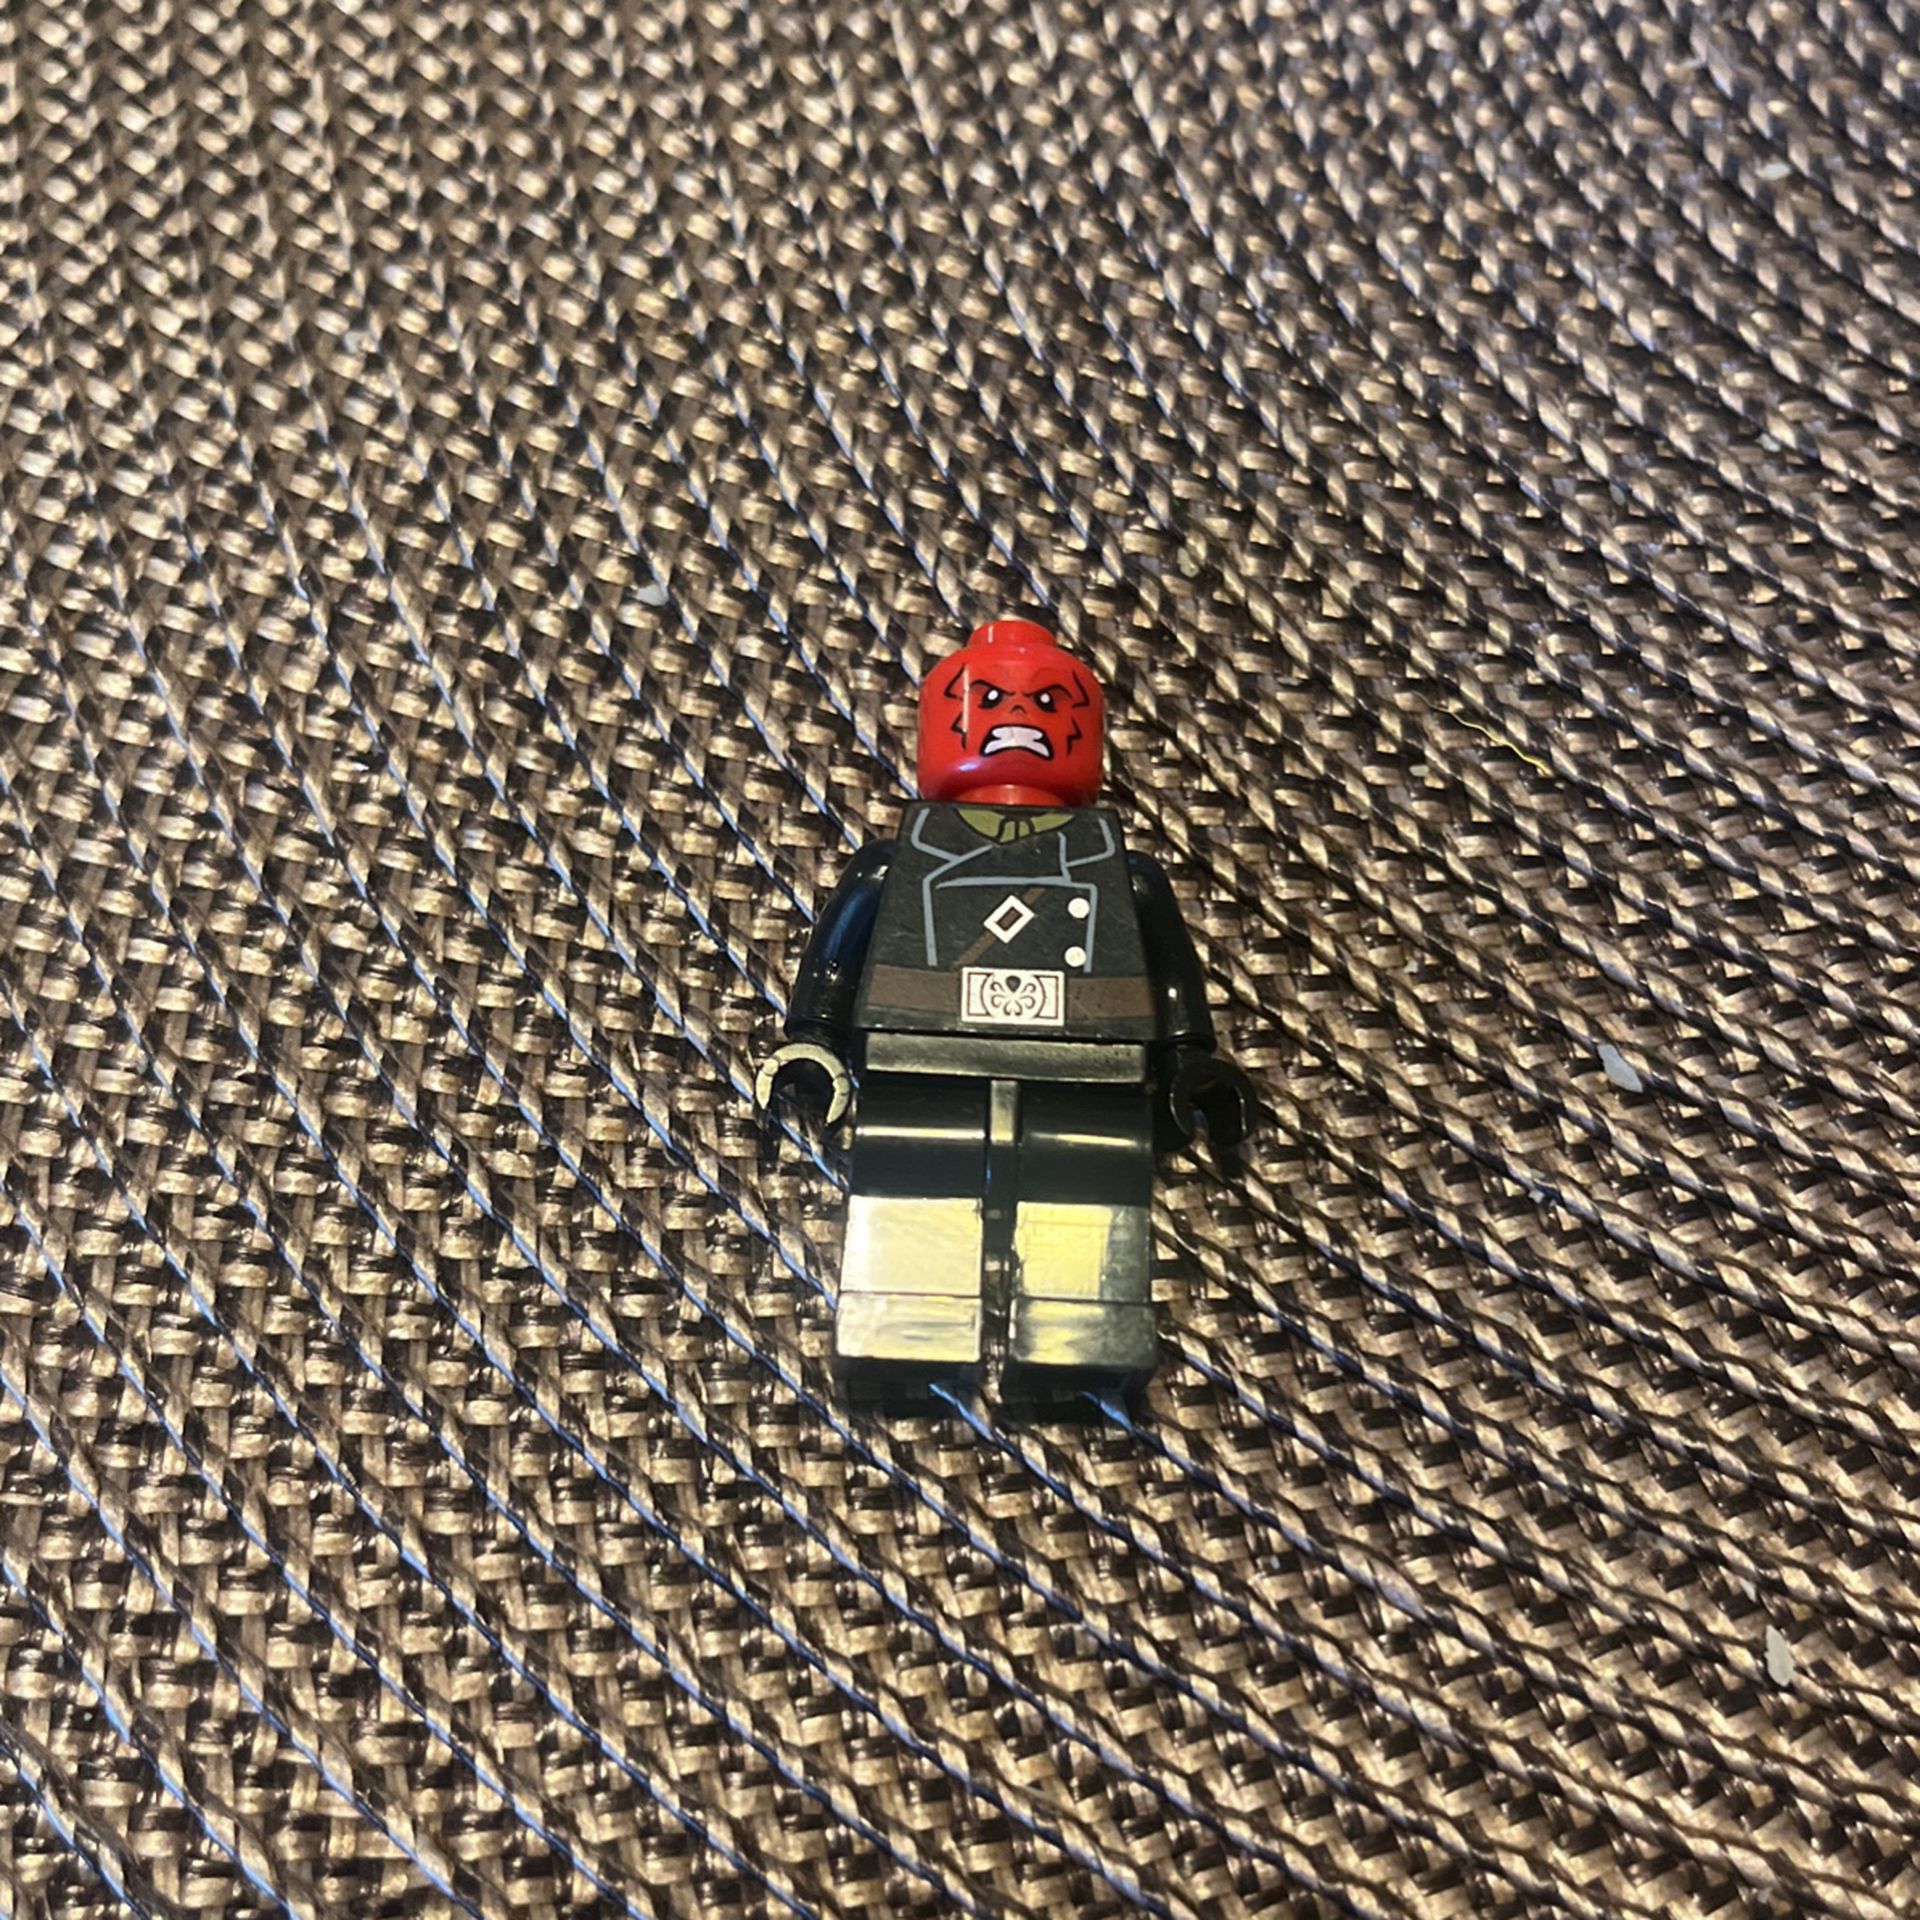 2014 Red Skull Lego Figure